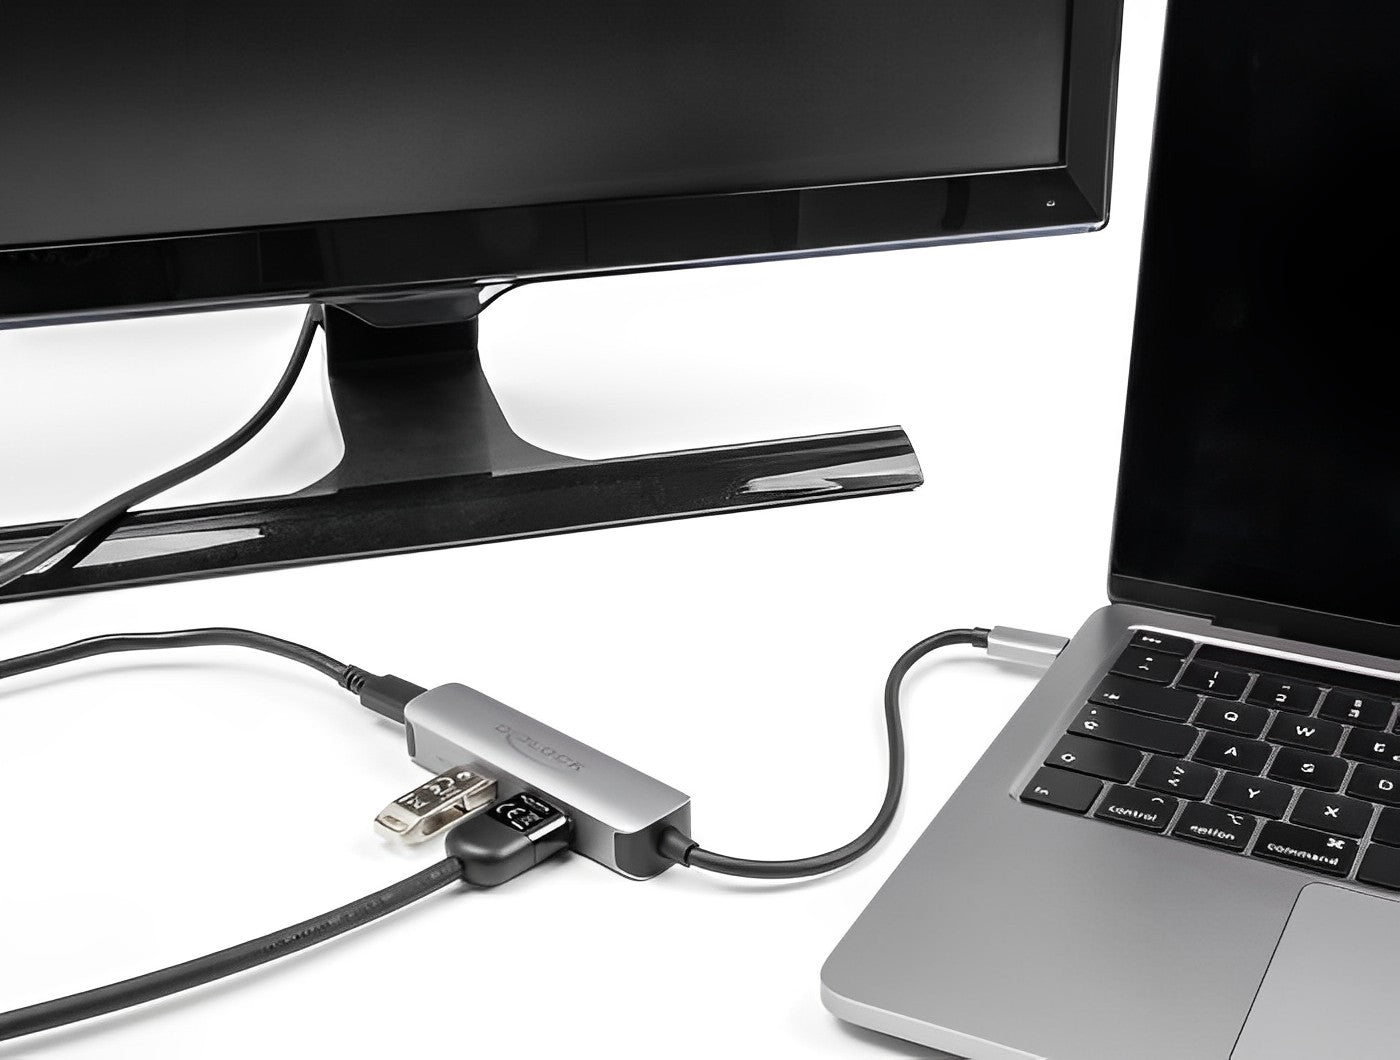 מפצל USB-C 5Gbps PD 92Watt עם 2 יציאות USB-A/C ושקע HDMI 4K לחיבור מסך - delock.israel